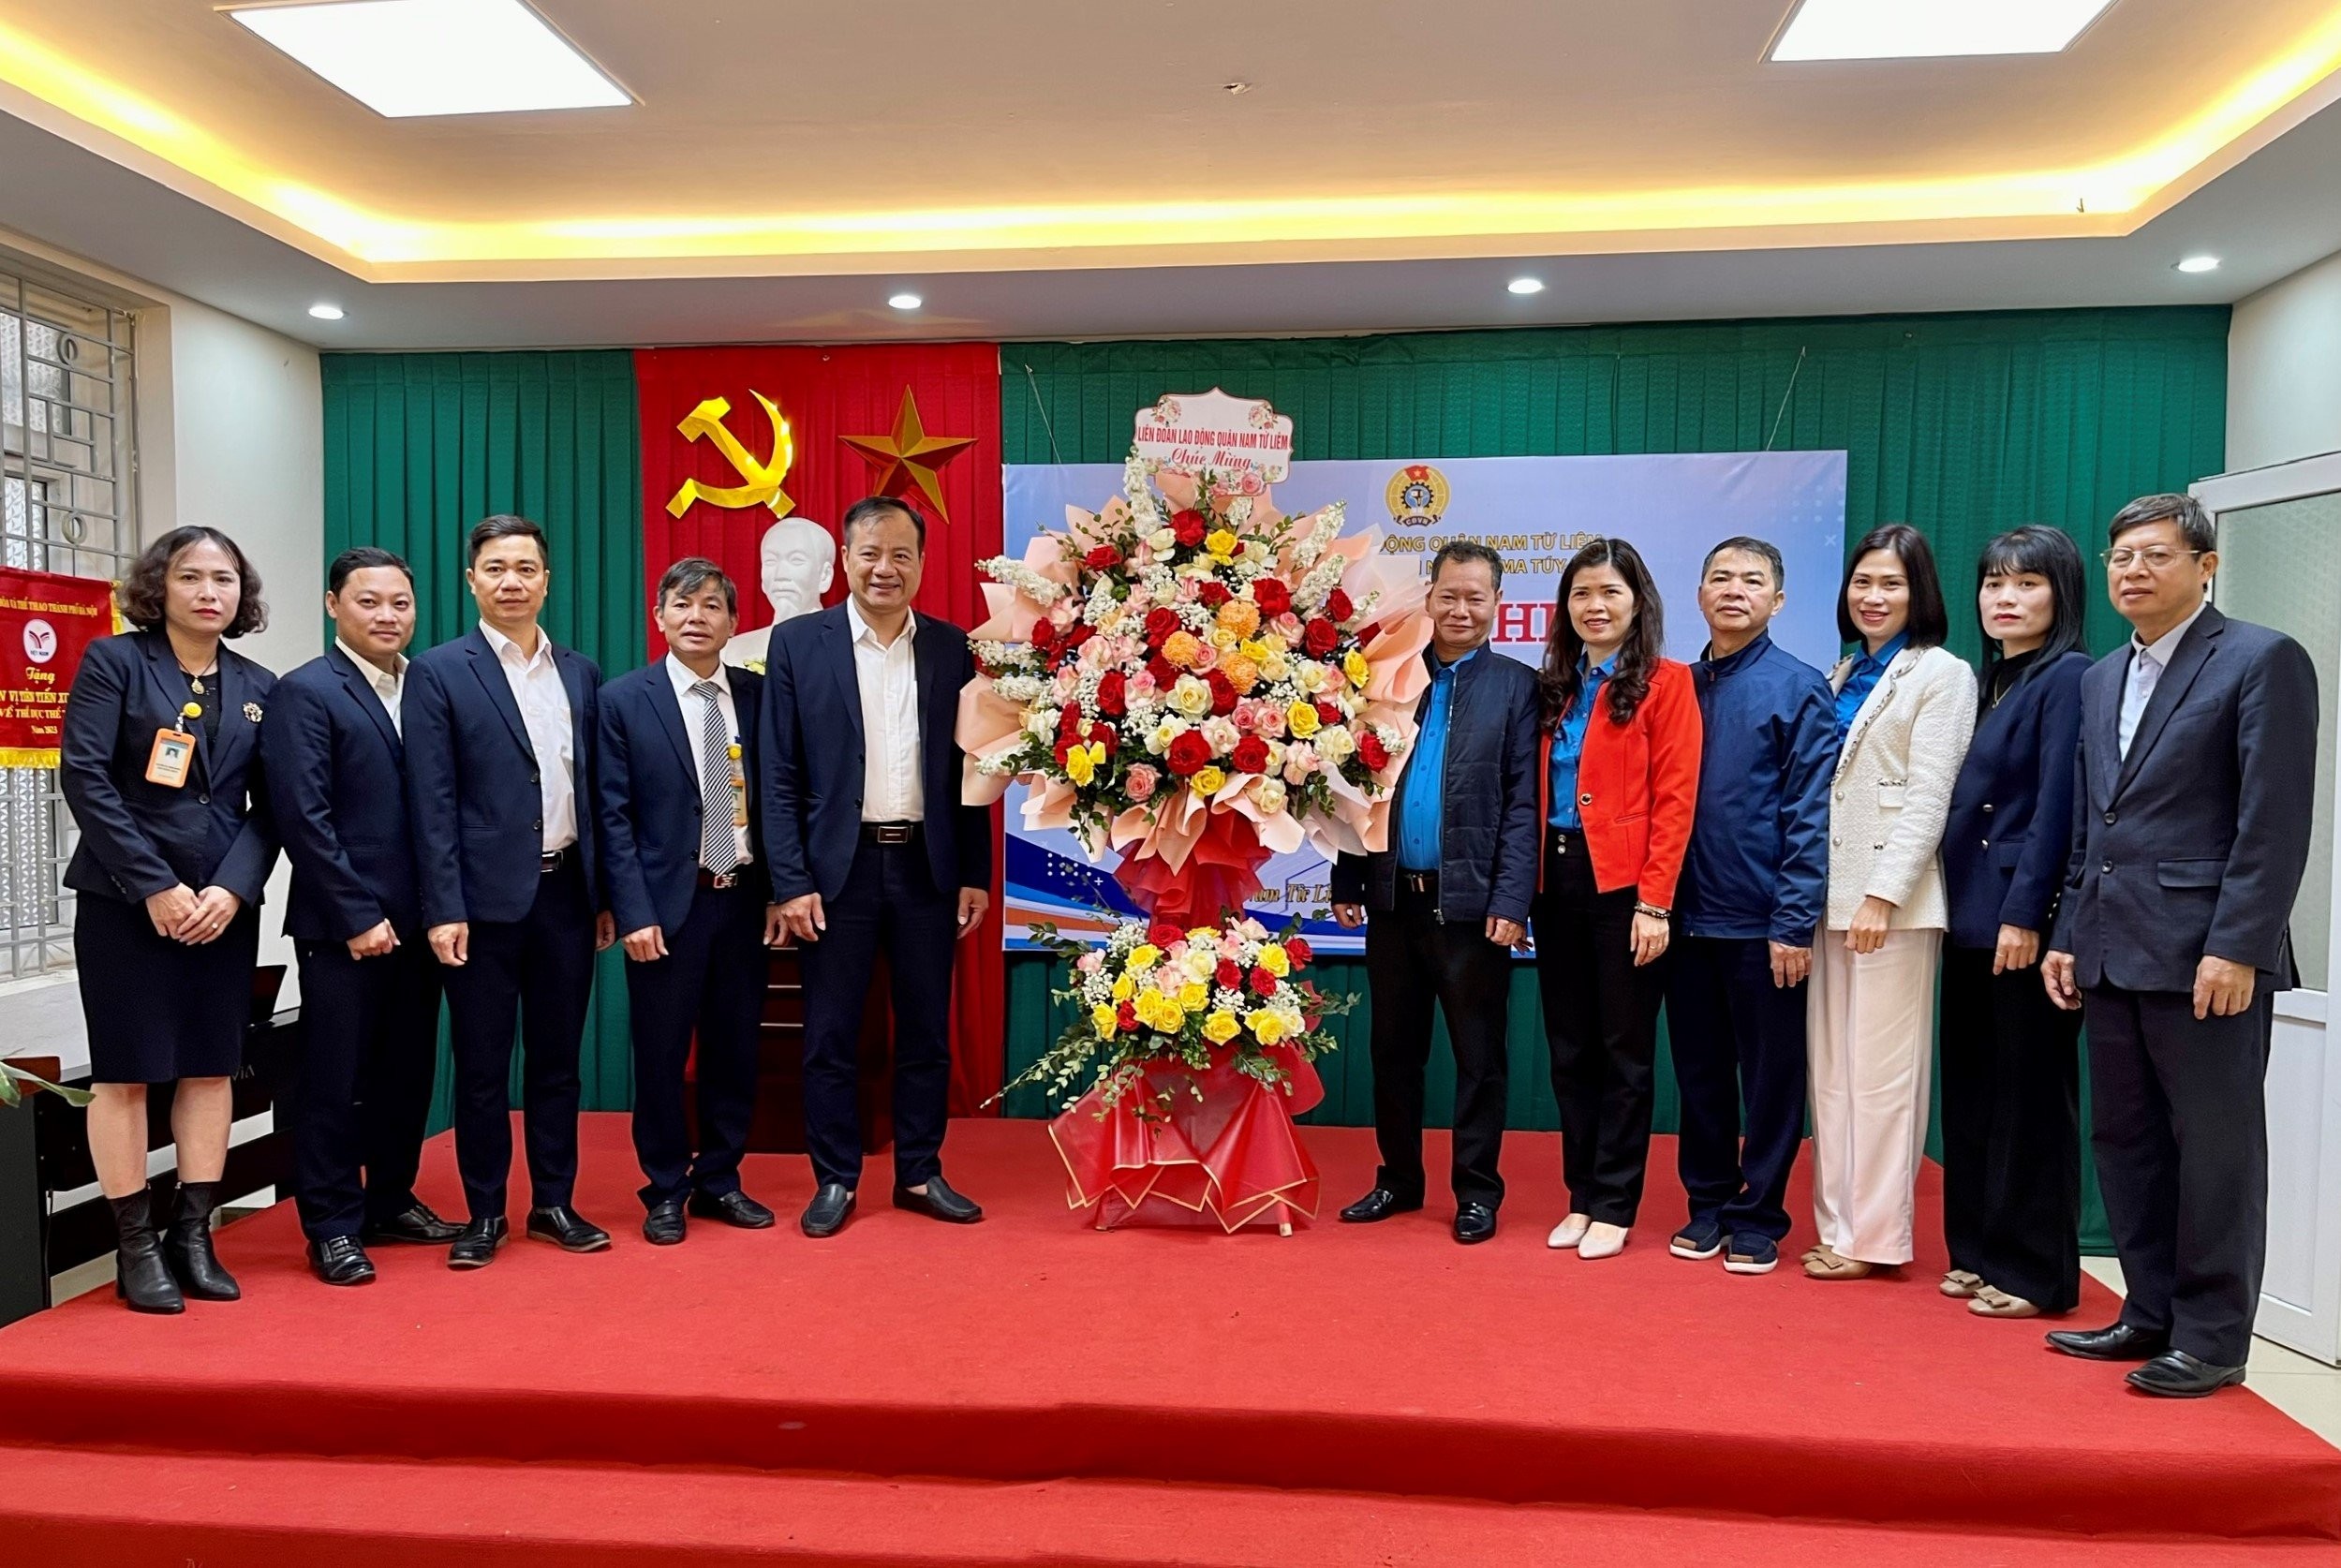 Ra mắt Điểm sinh hoạt Công đoàn: Dấu ấn mới của LĐLĐ quận Nam Từ Liêm